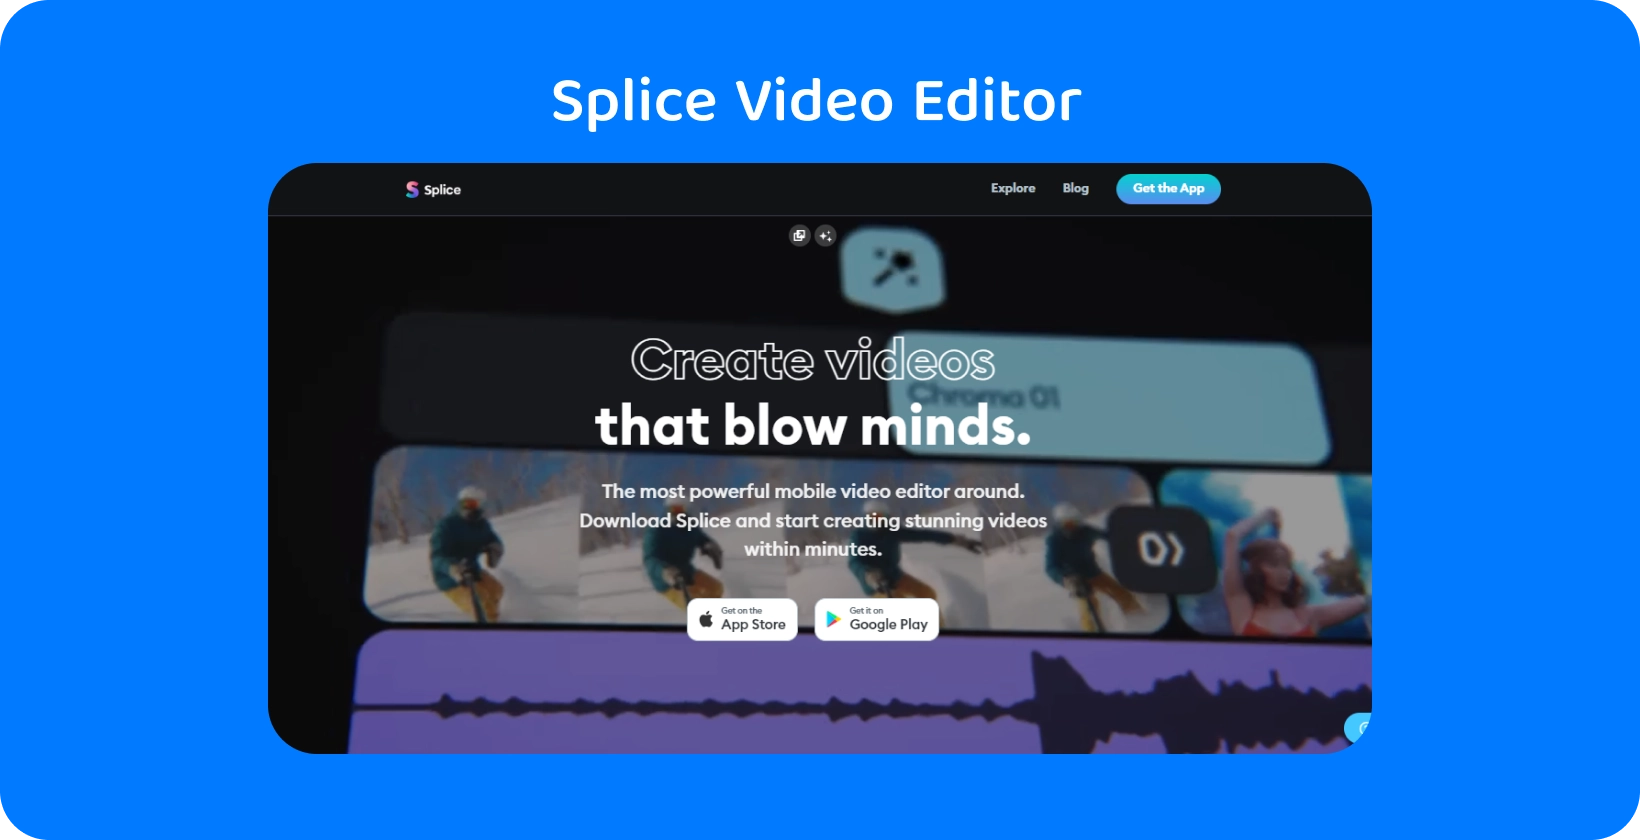 Splice promociju aplikacija na pametnom telefonu, prikazujući je kao najmoćnijeg mobilnog video urednika za kreiranje zapanjujućih video zapisa.